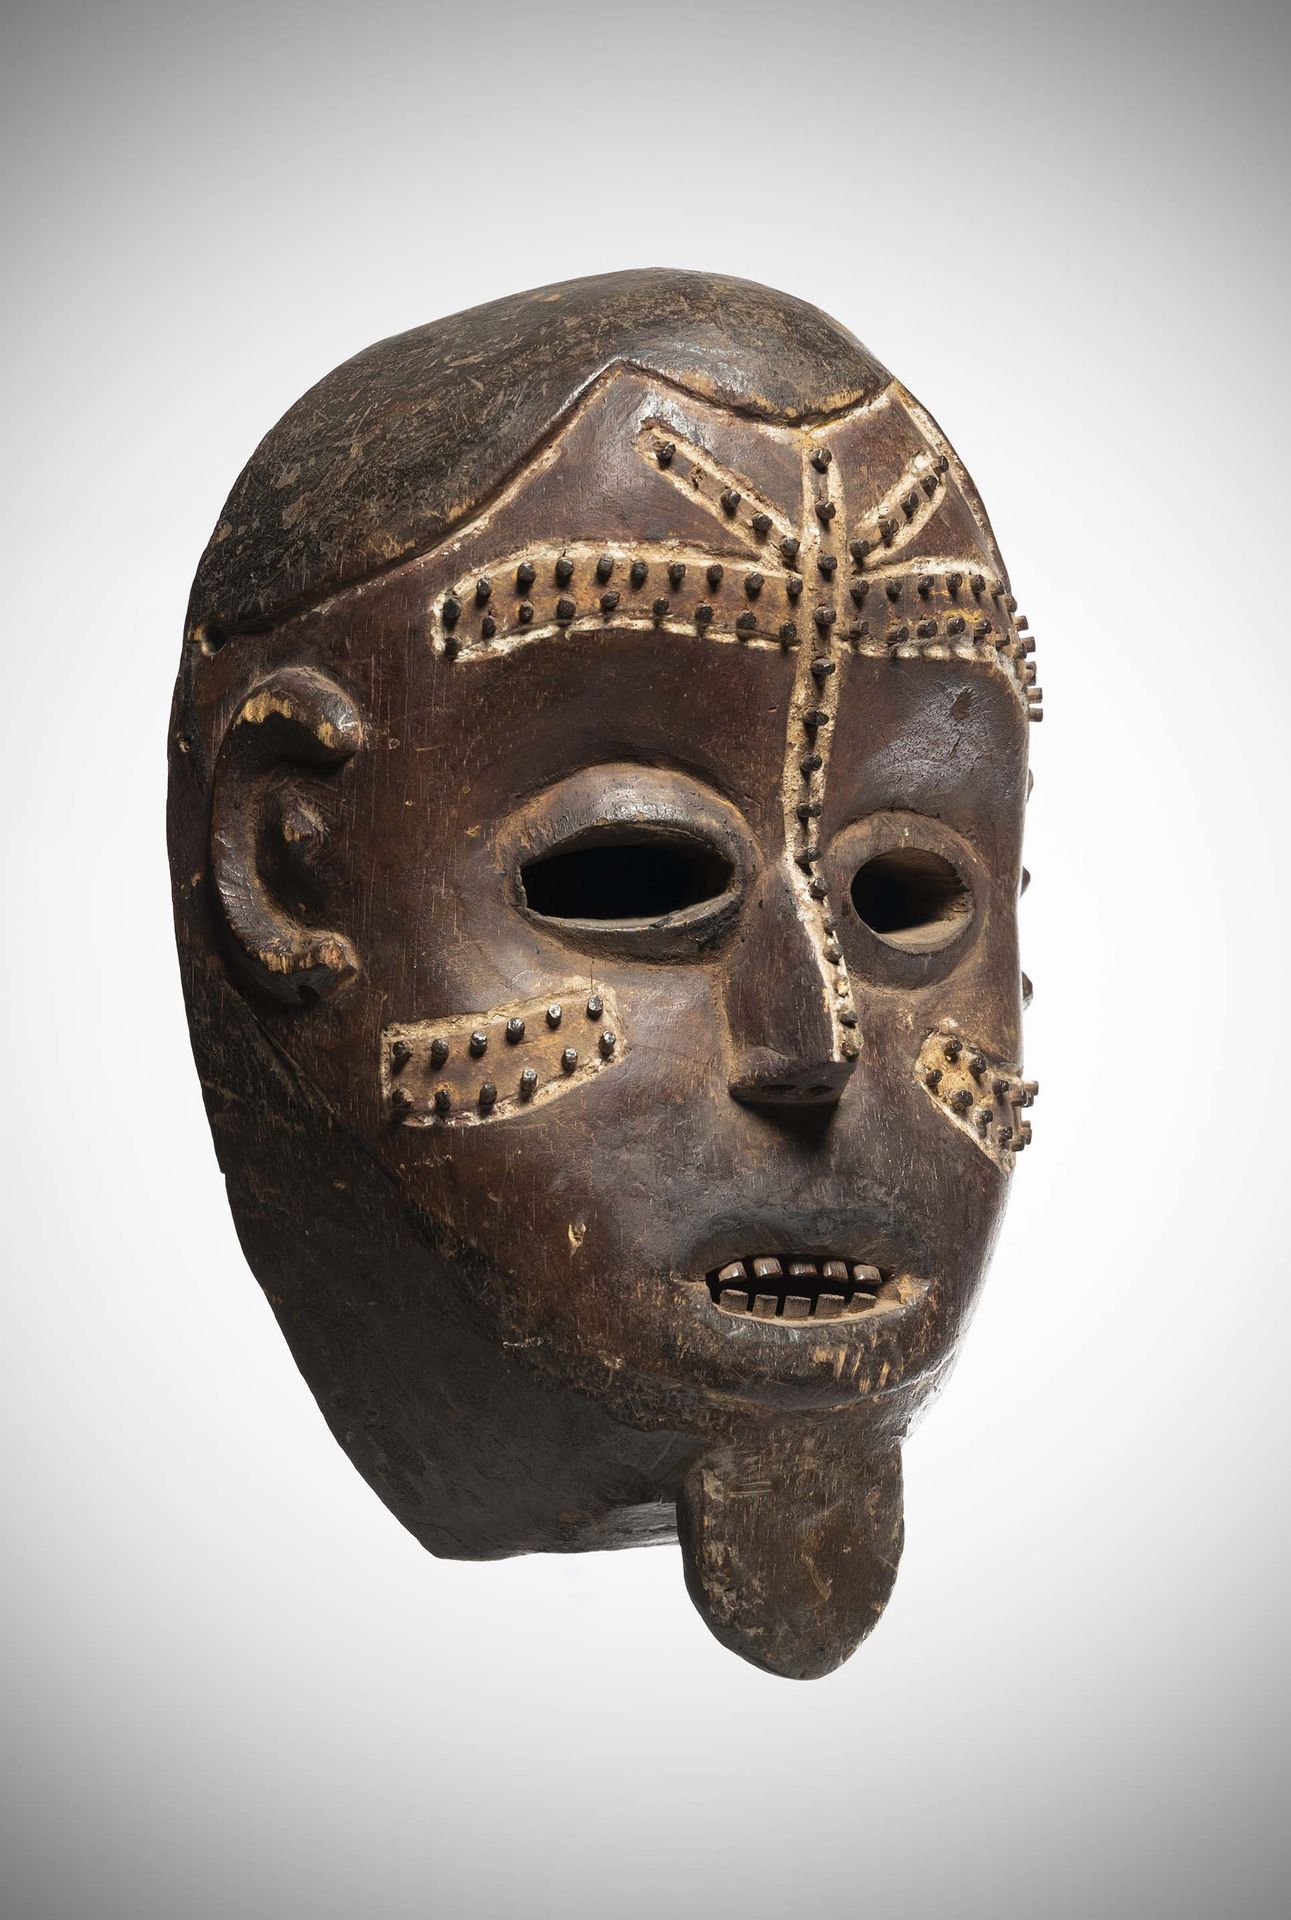 Null 恩古拉

(DRC) 脸上有图库拉涂层的面具。

由高岭土边框画出的疤痕是浮雕式的，并在额头、鼻子和脸颊上用钉子线加以强调。

见M.L Felix，&hellip;